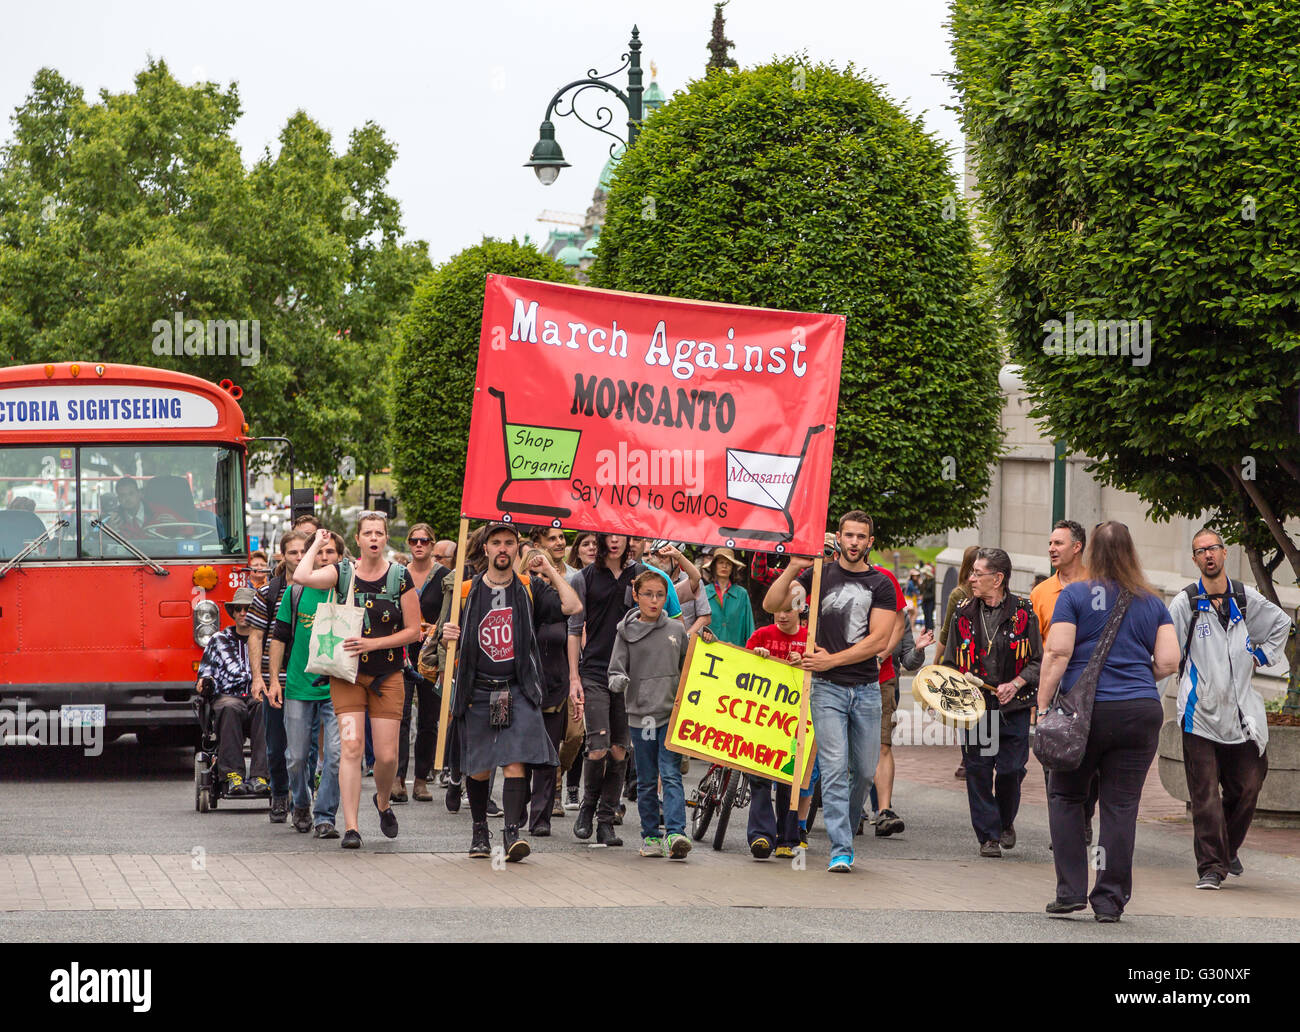 La protesta contro la Monsanto e gli OGM nelle strade di Victoria, British Columbia, Canad Foto Stock